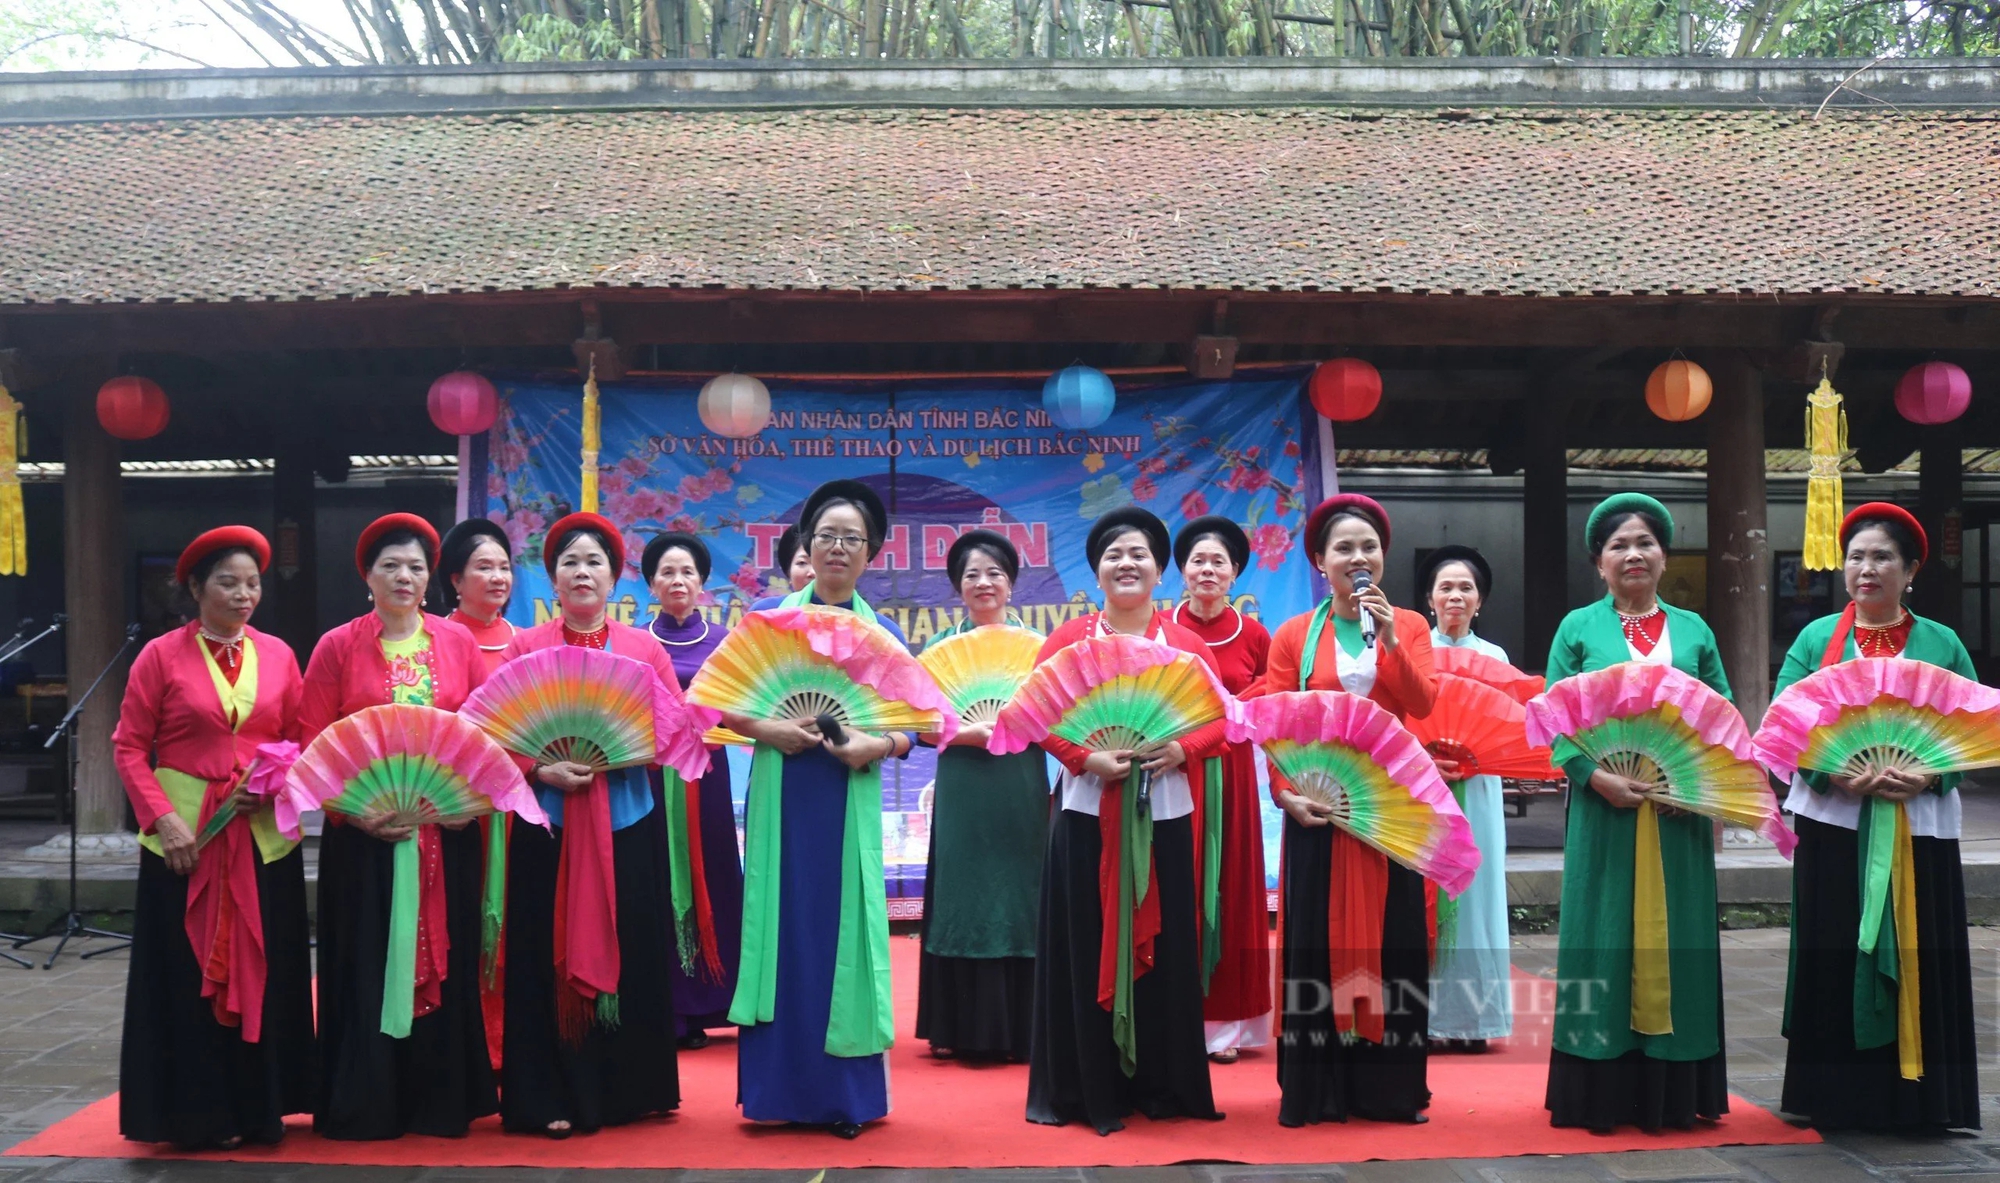 Bắc Ninh: Trình diễn nghệ thuật dân gian truyền thống tại di tích quốc gia đặc biệt- Ảnh 5.